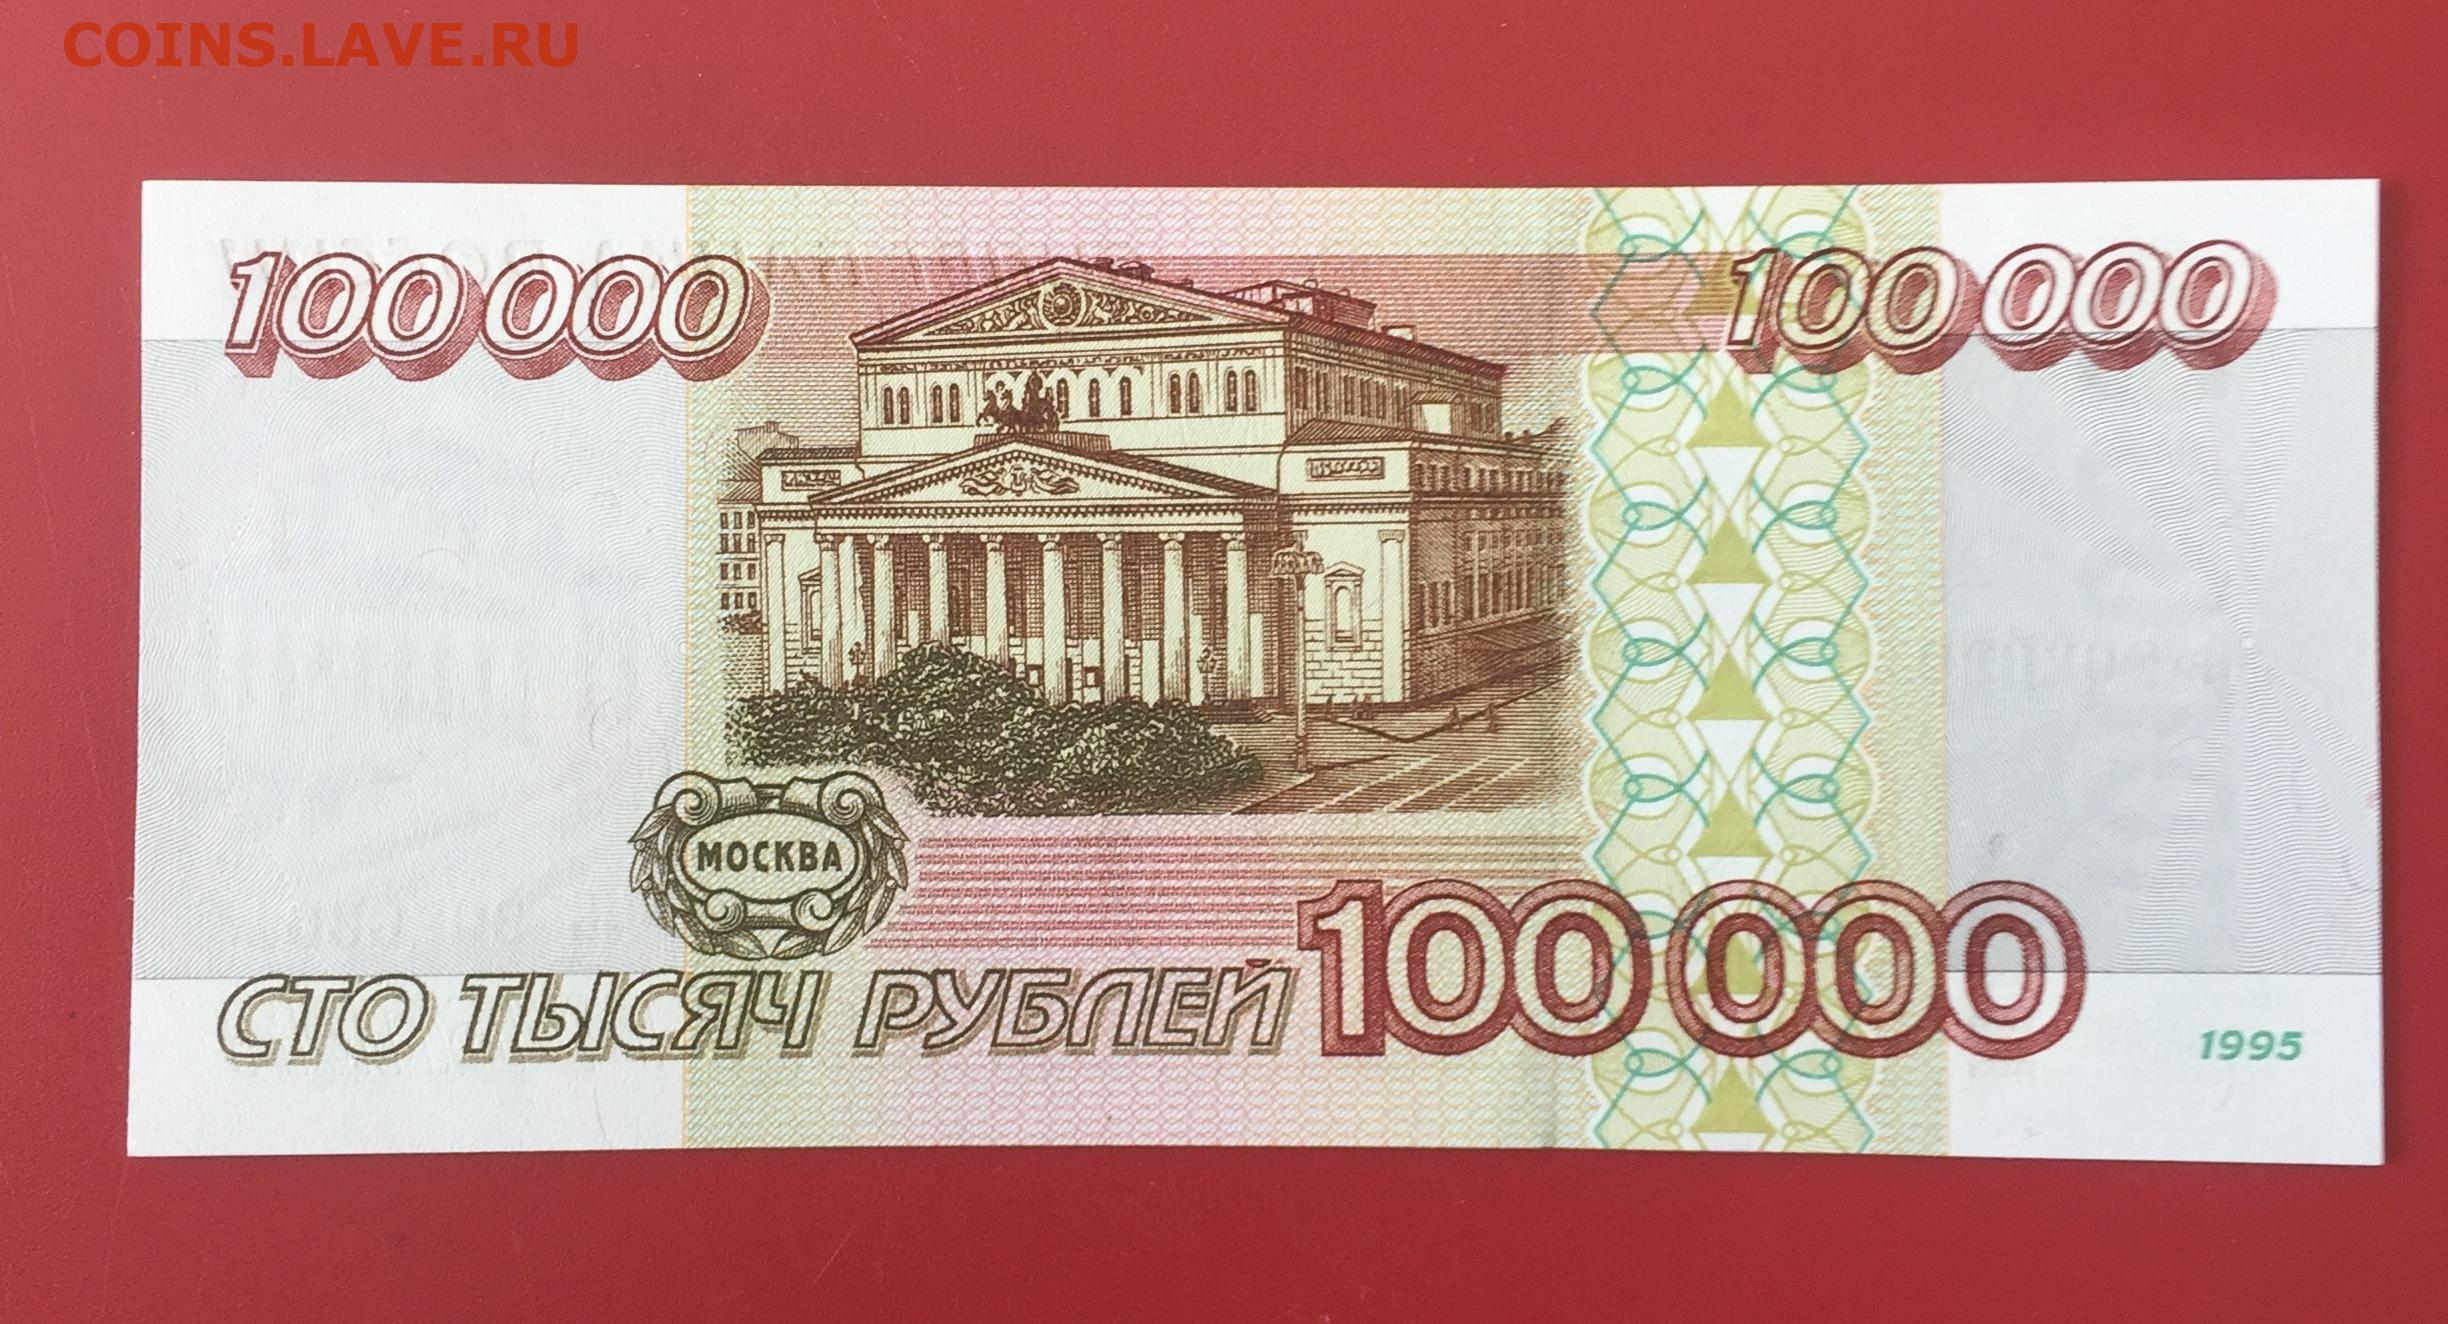 25000 российских рублей в белорусских рублях. 10 000 Рублей. 100000 Рублей в 1998 году. Ноль рублей. Рубль России.